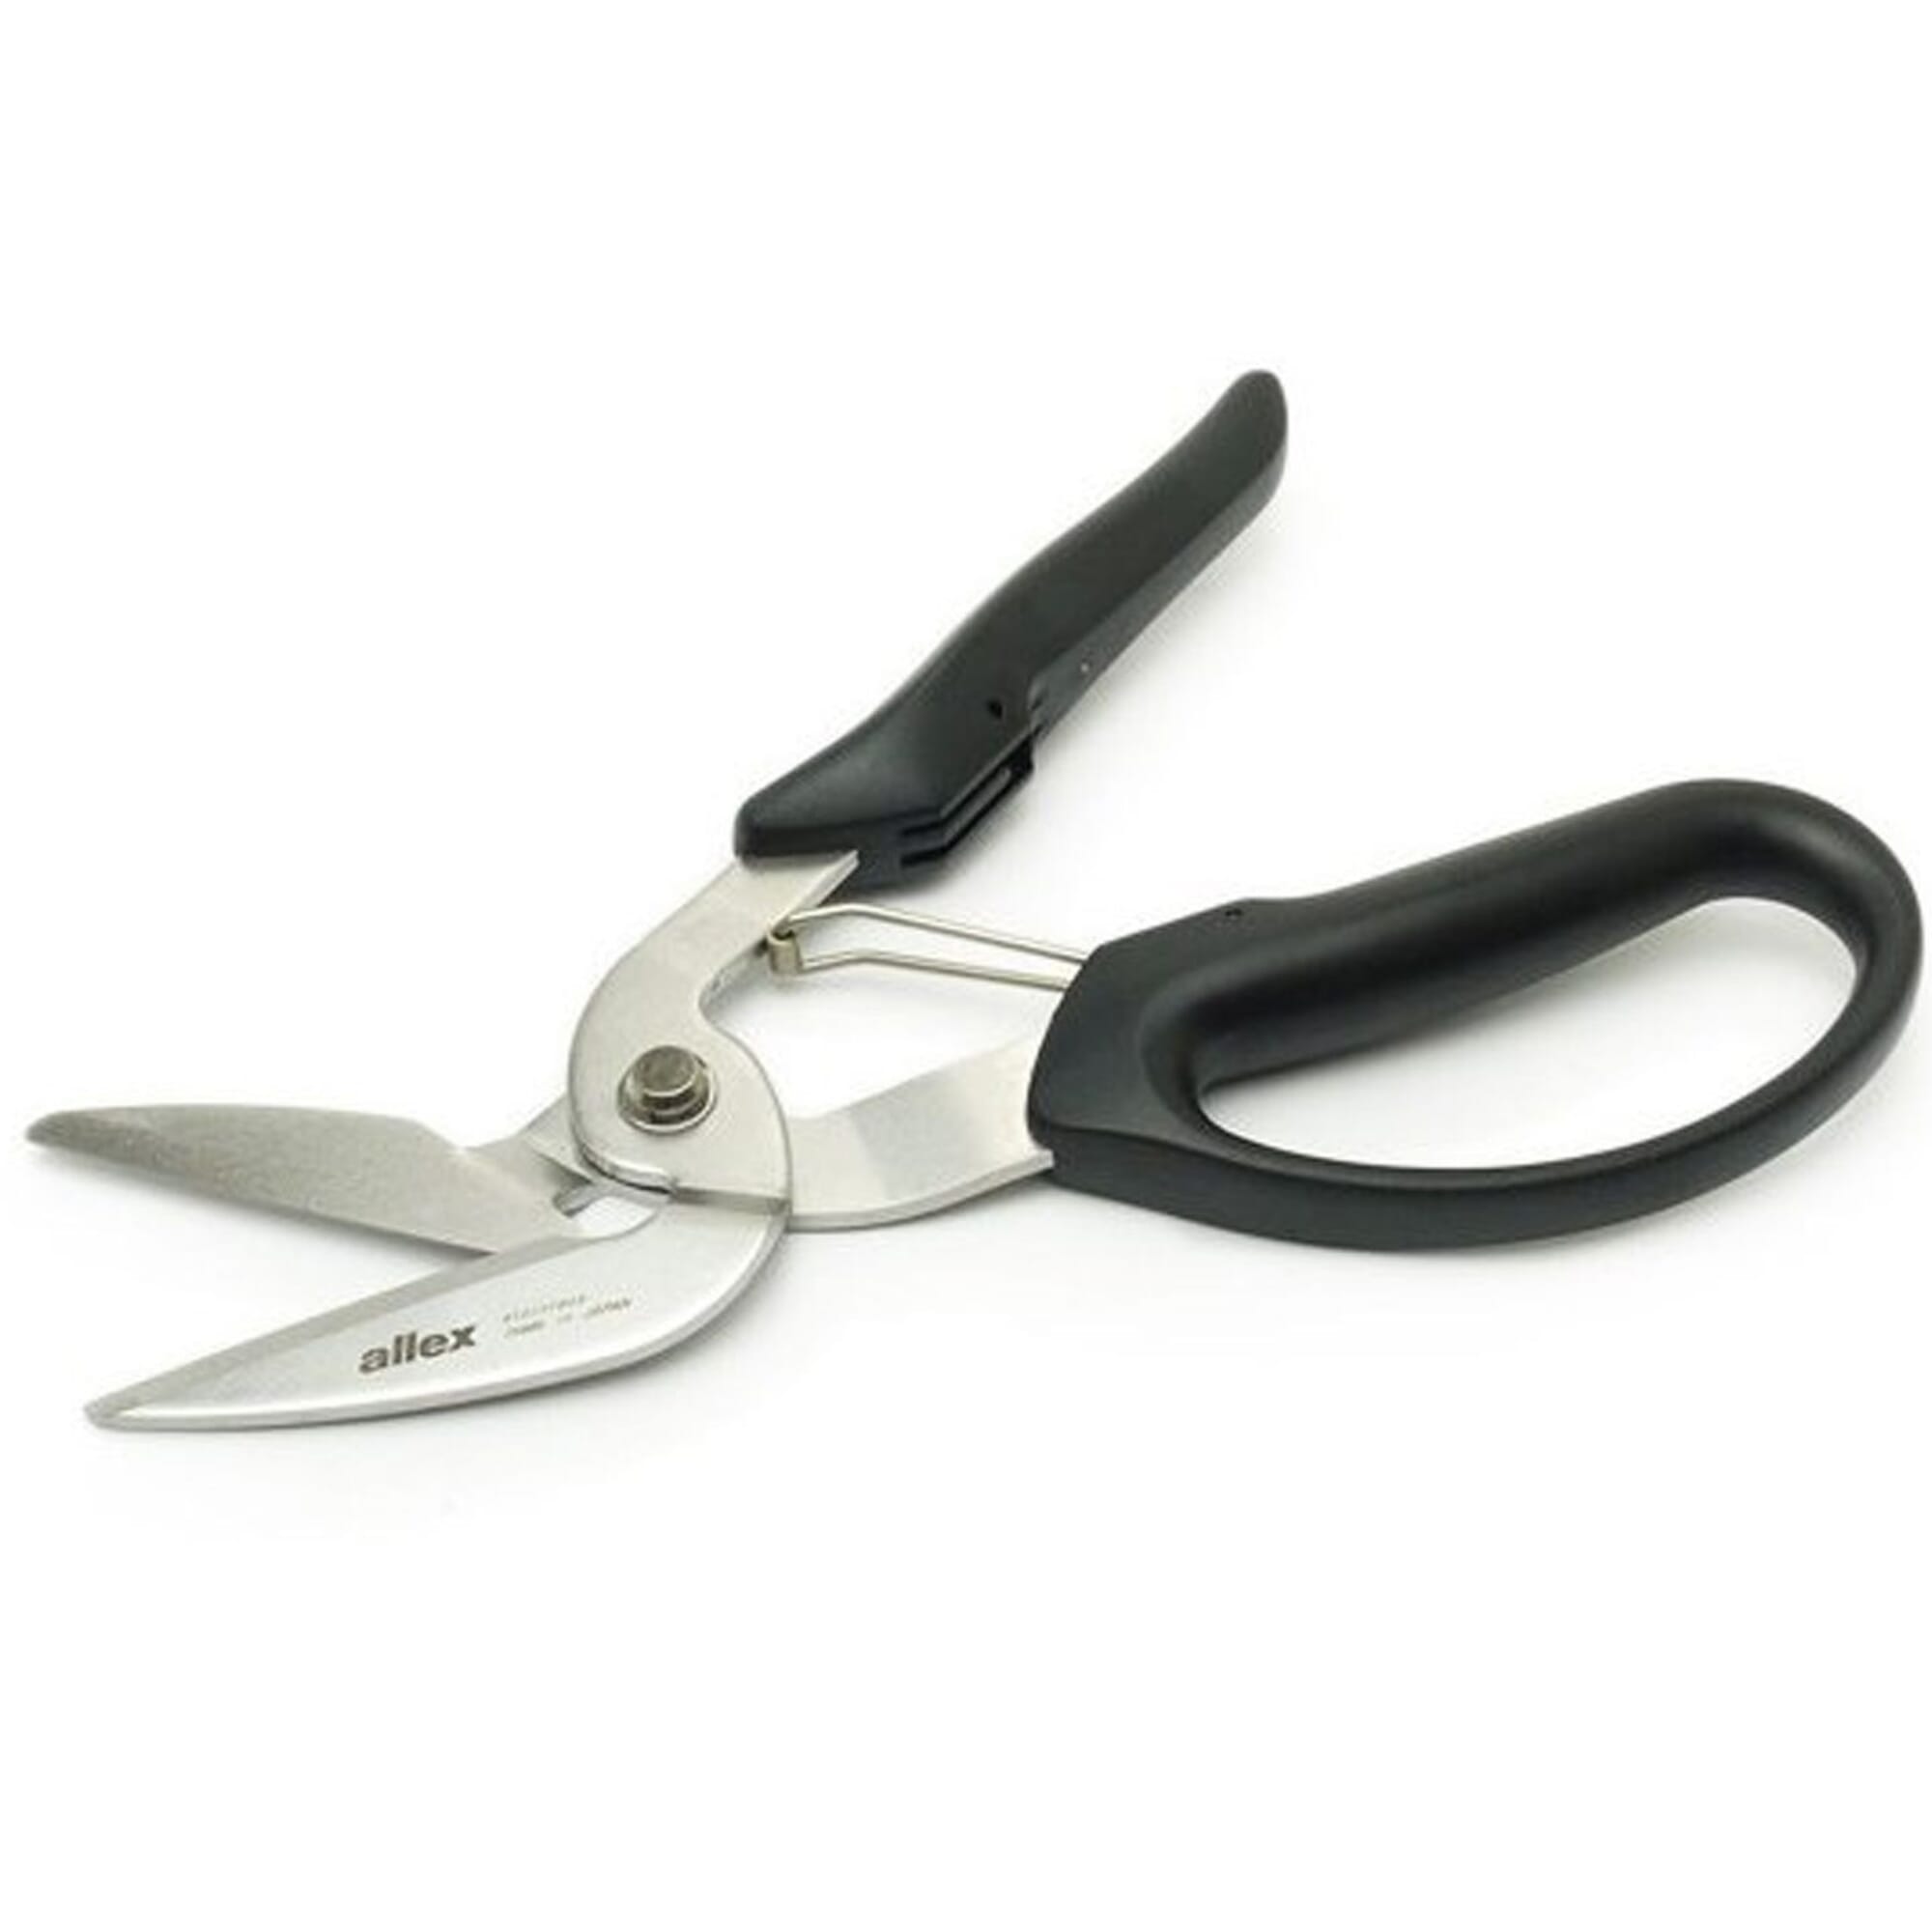 Allex Stainless Steel Scissors Black